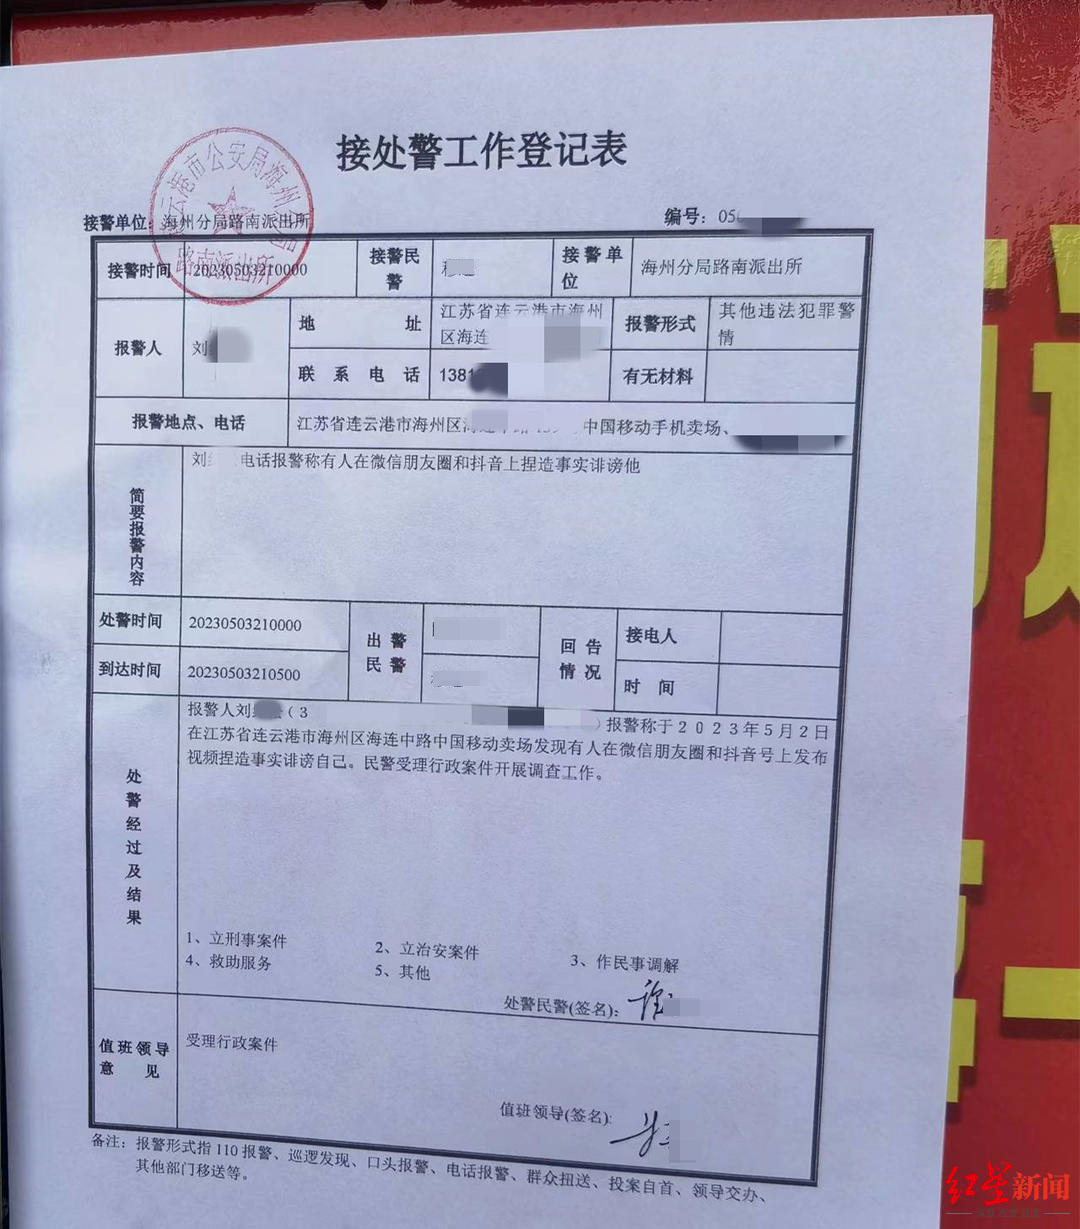 刘某某提供的“接处警工作登记表”